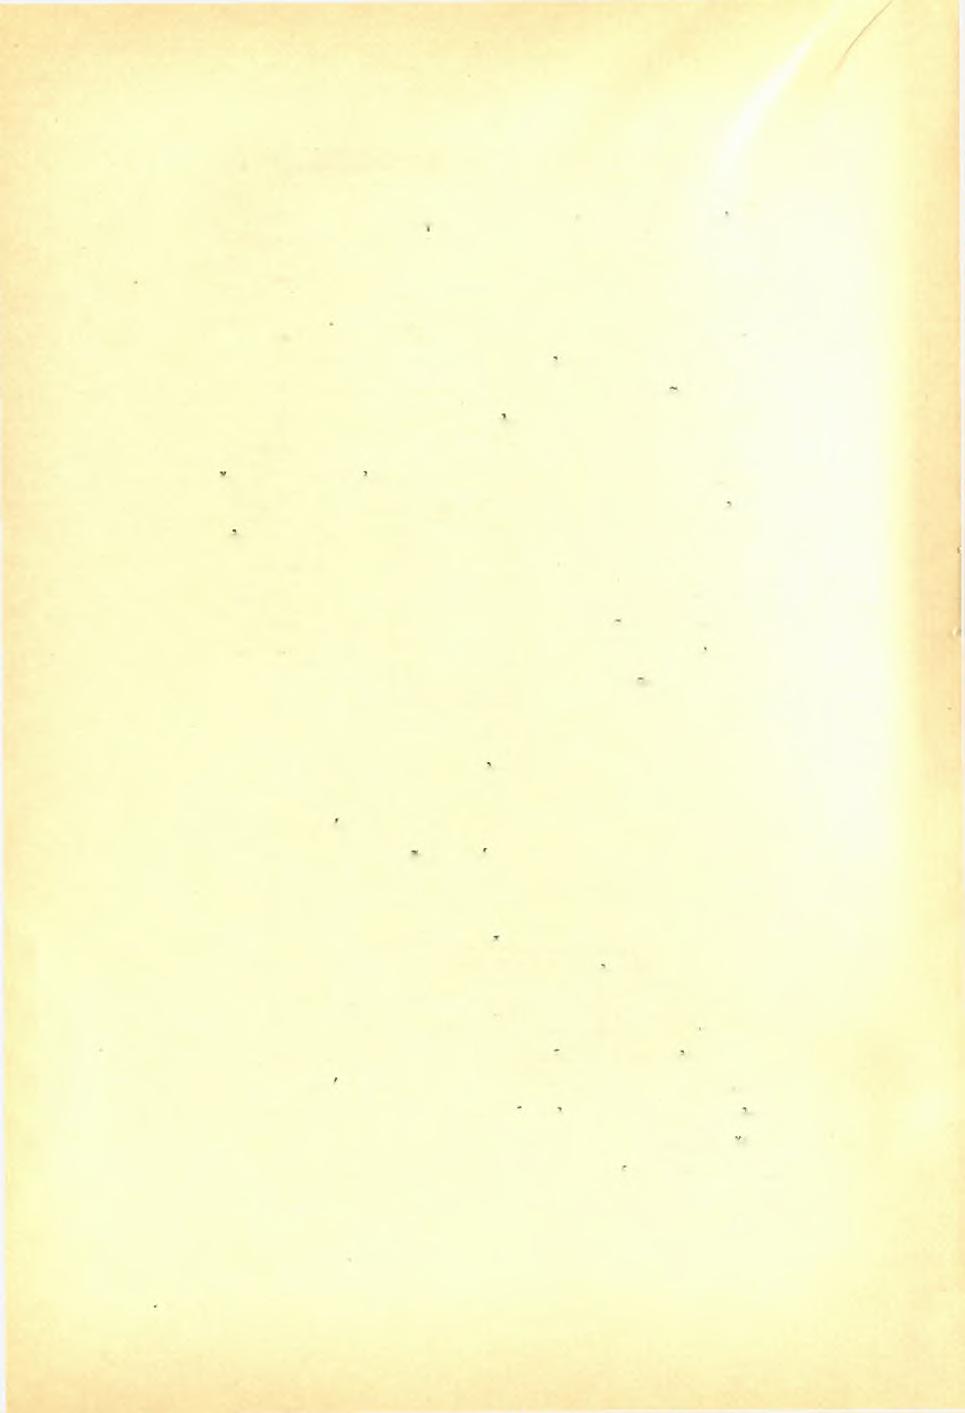 48 Δ. Εύα,γγελίδου, άνασκαφϊ) Ναγοϋ Χίου. ΠΑΕ 1921 'Ως έν τφ προχείρο) διαγράμματι (Α) φαίνεται, προς Ά. εύρέθη τοίχου θεμέλιον μέ διεύθυνσιν έκ Β. πράς Ν. καί πλάτους 3.